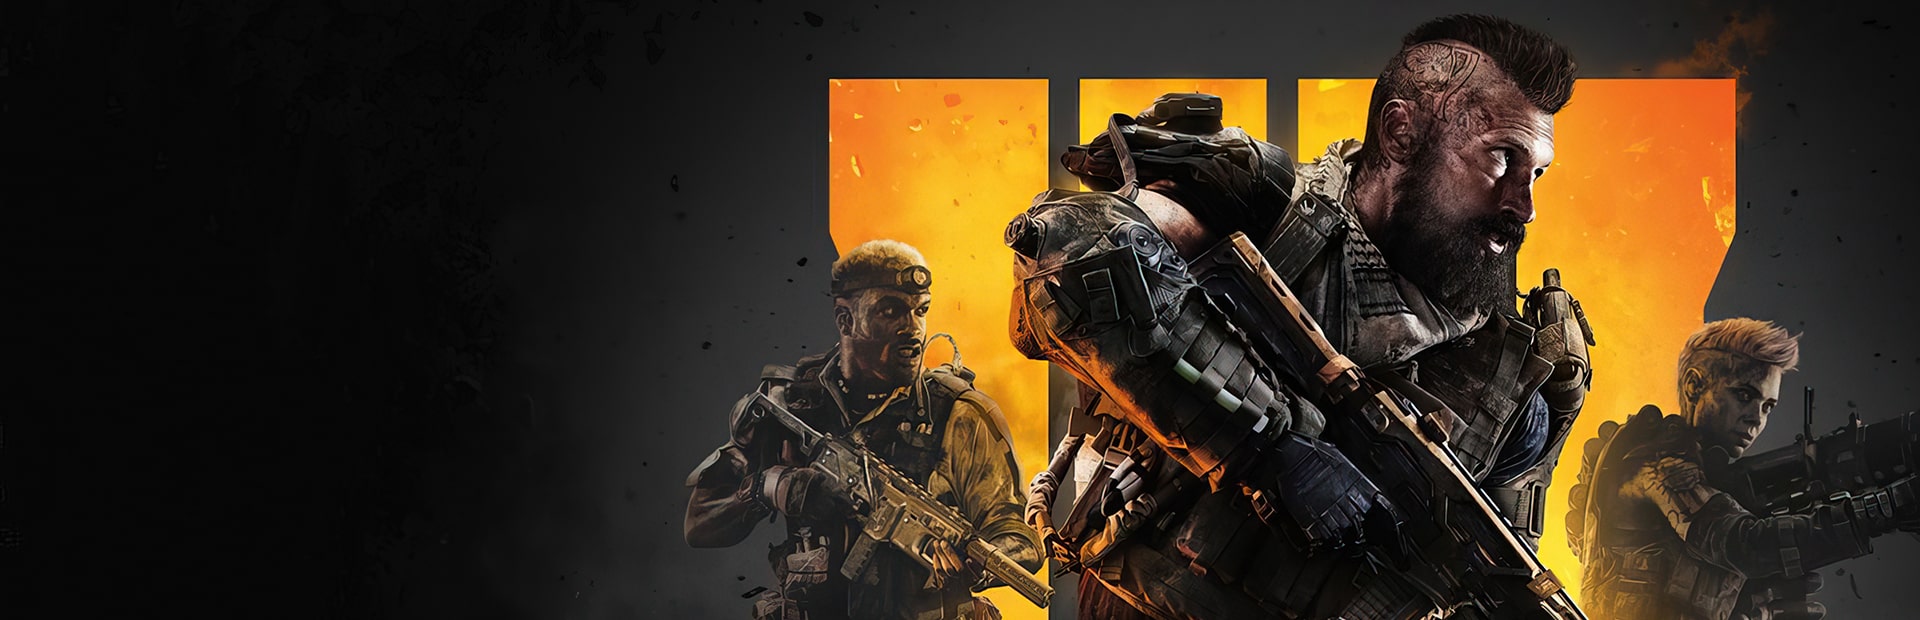 Call of Duty: Black Ops 4 | PC | Battle.net Digital Download | Wallpaper